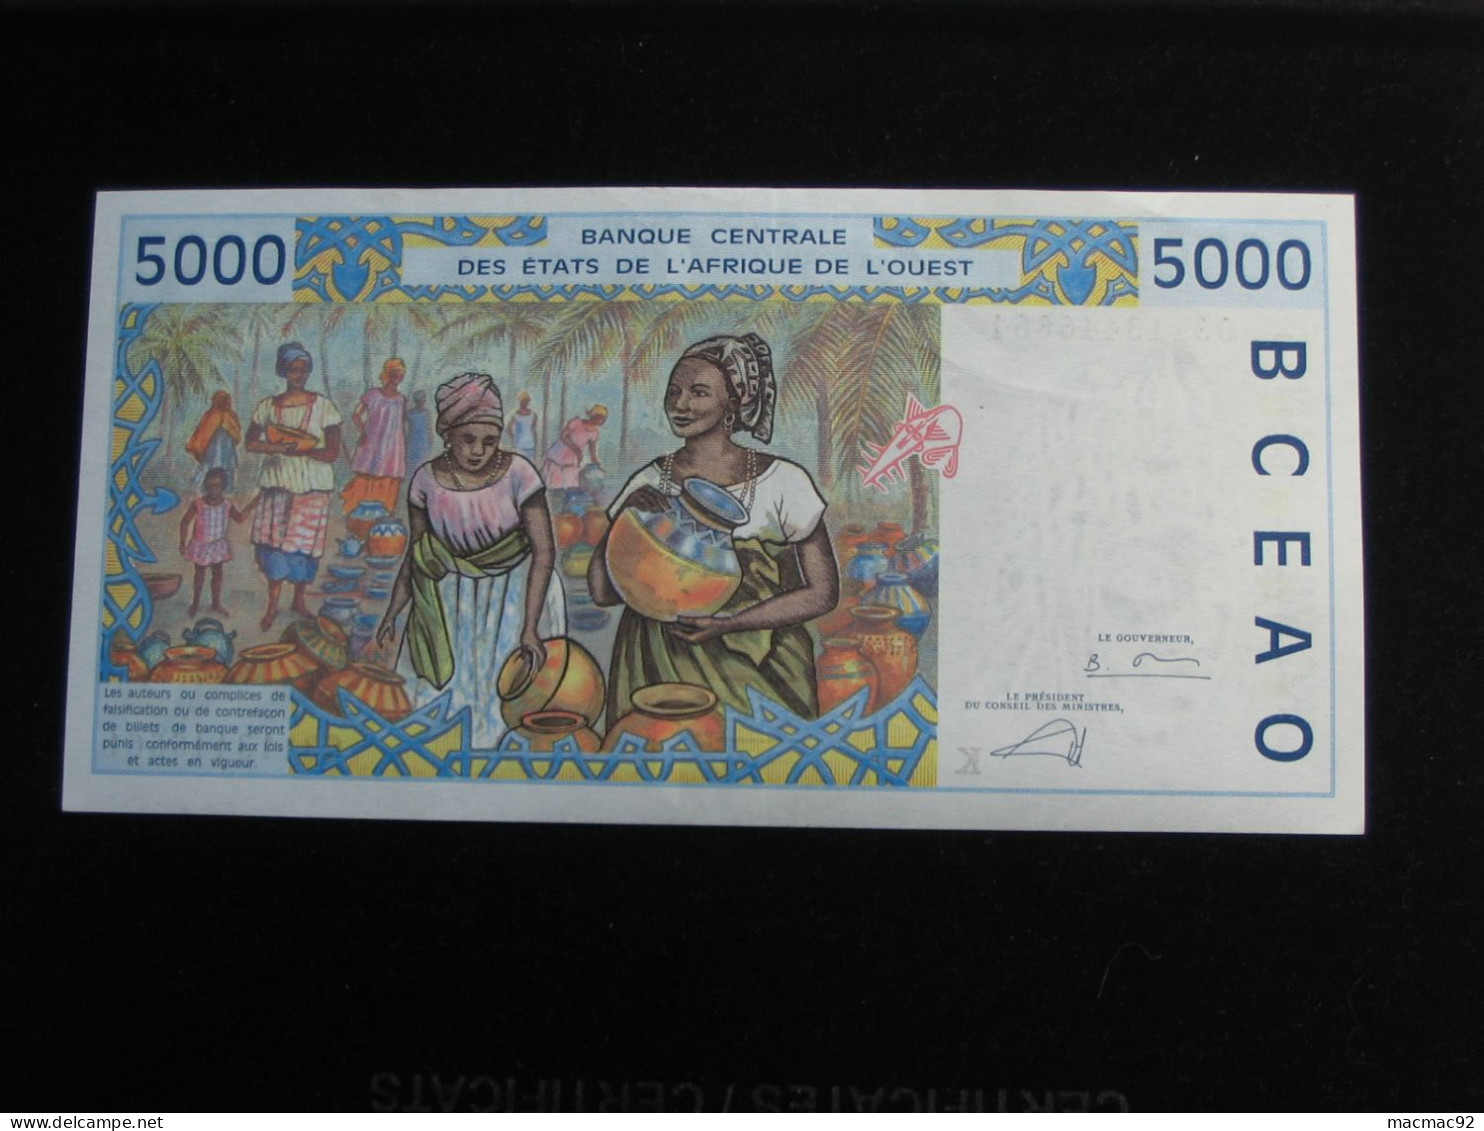 5000 Cinq Mille Francs 2002  - SENEGAL - Banque Centrale Des états De L'Afrique De L'ouest  **** EN ACHAT IMMEDIAT **** - Sénégal